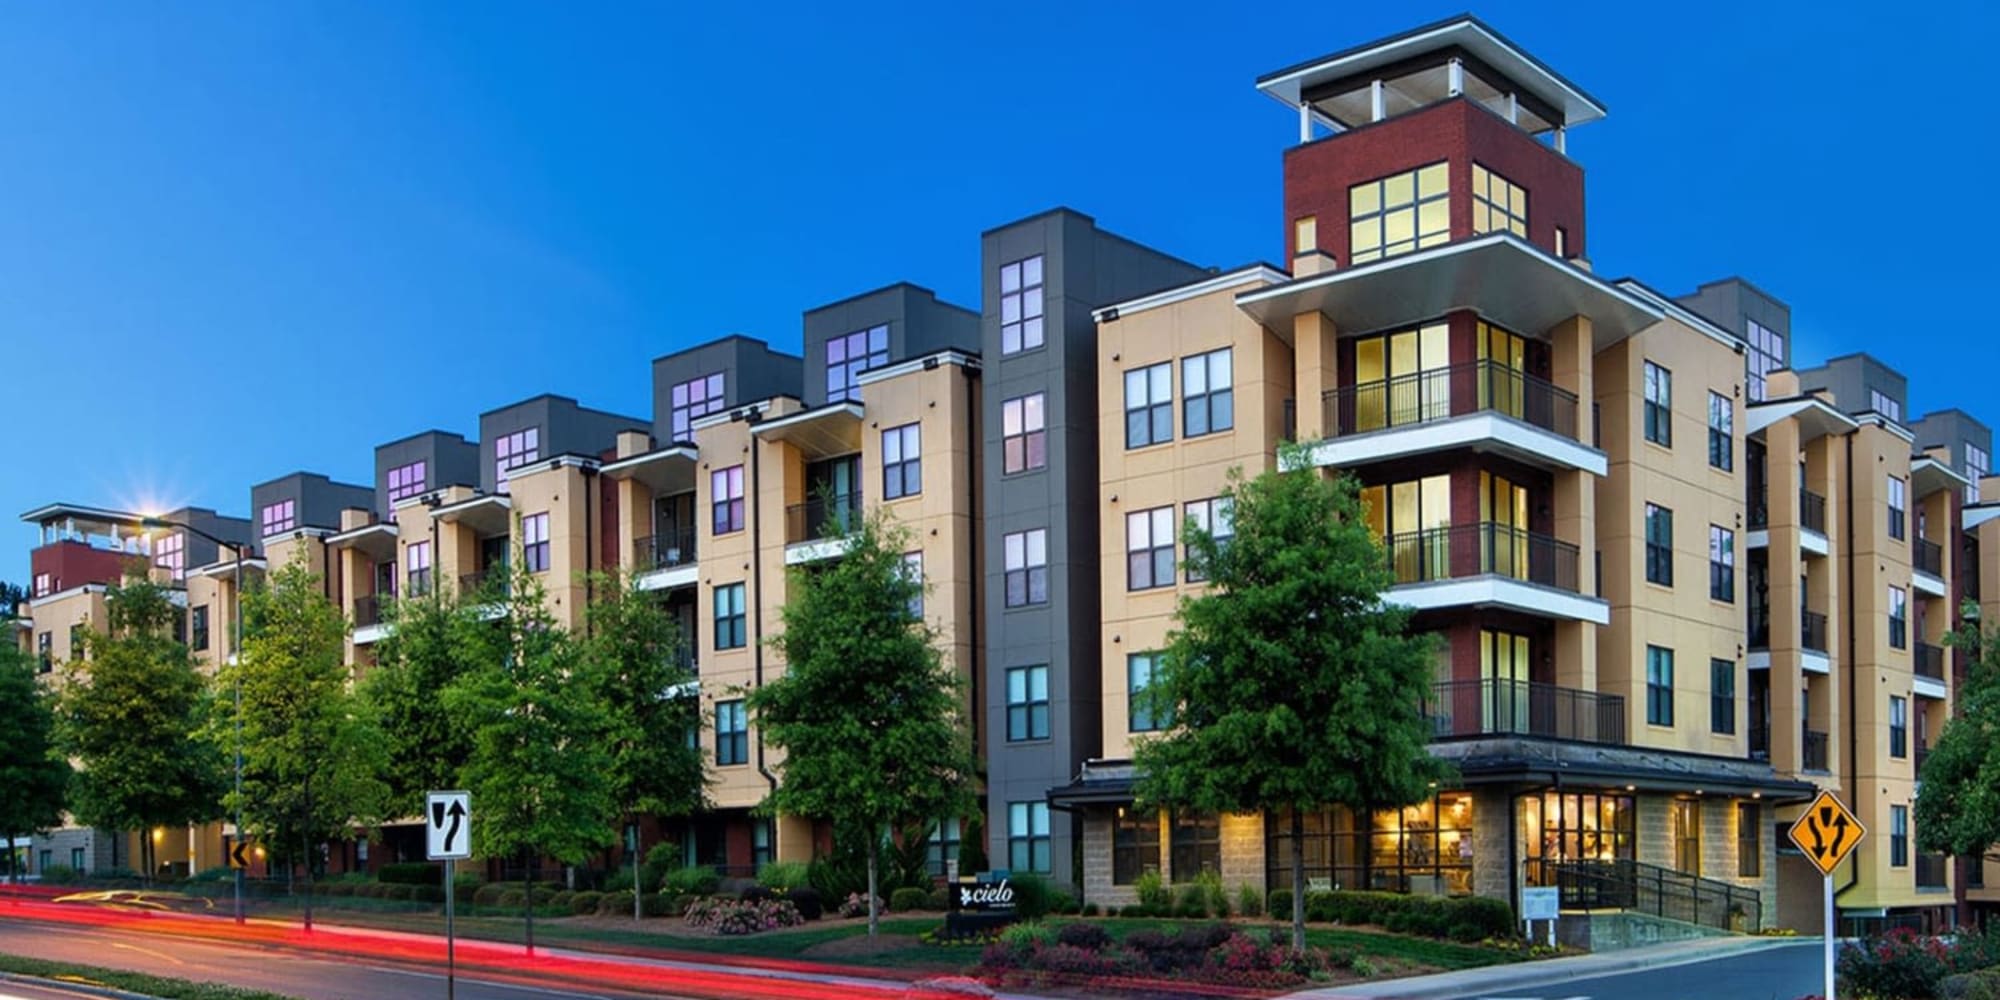 Apartments at Cielo in Charlotte, North Carolina